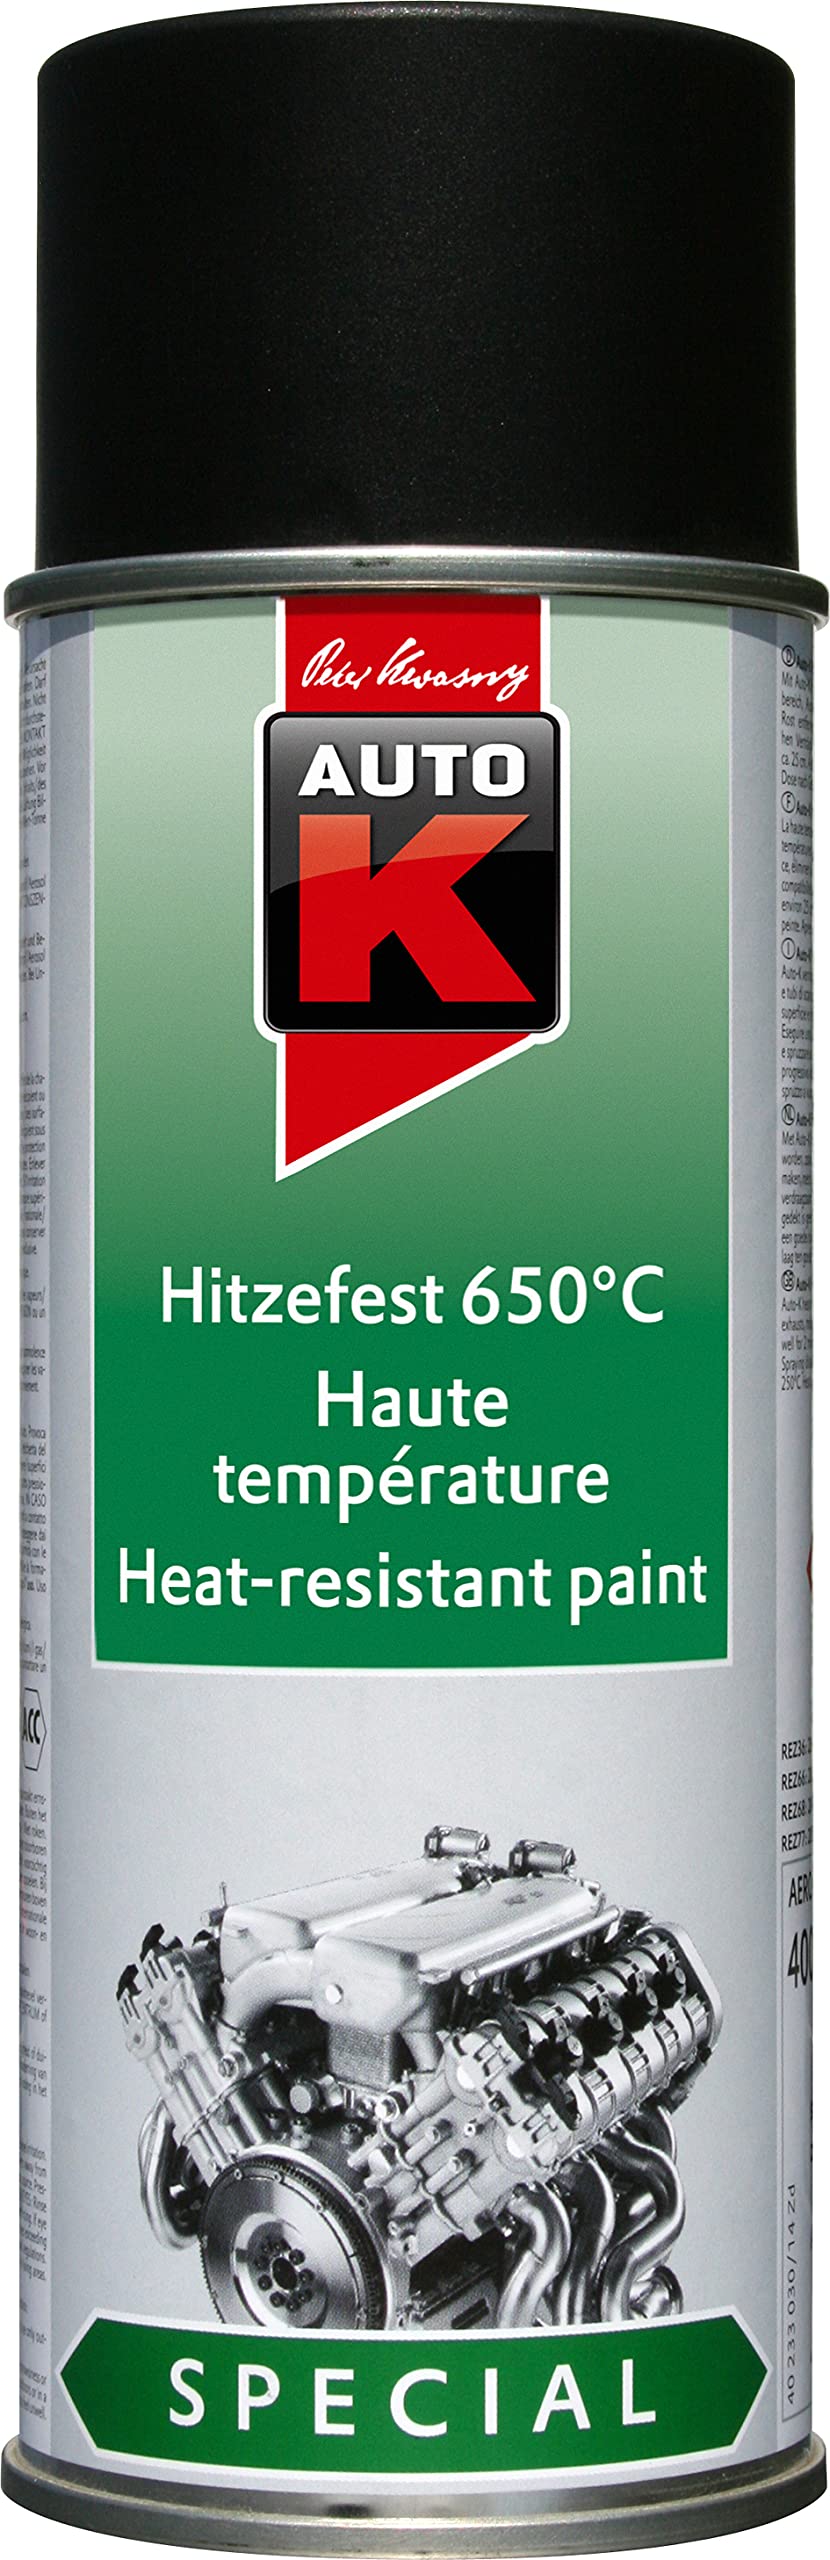 AutoK Special - Hitzefester Speziallack, 400 ml, schwarz -Hoch hitzebeständig bis 650°C, ideal für Motoren oder Grills von AutoK